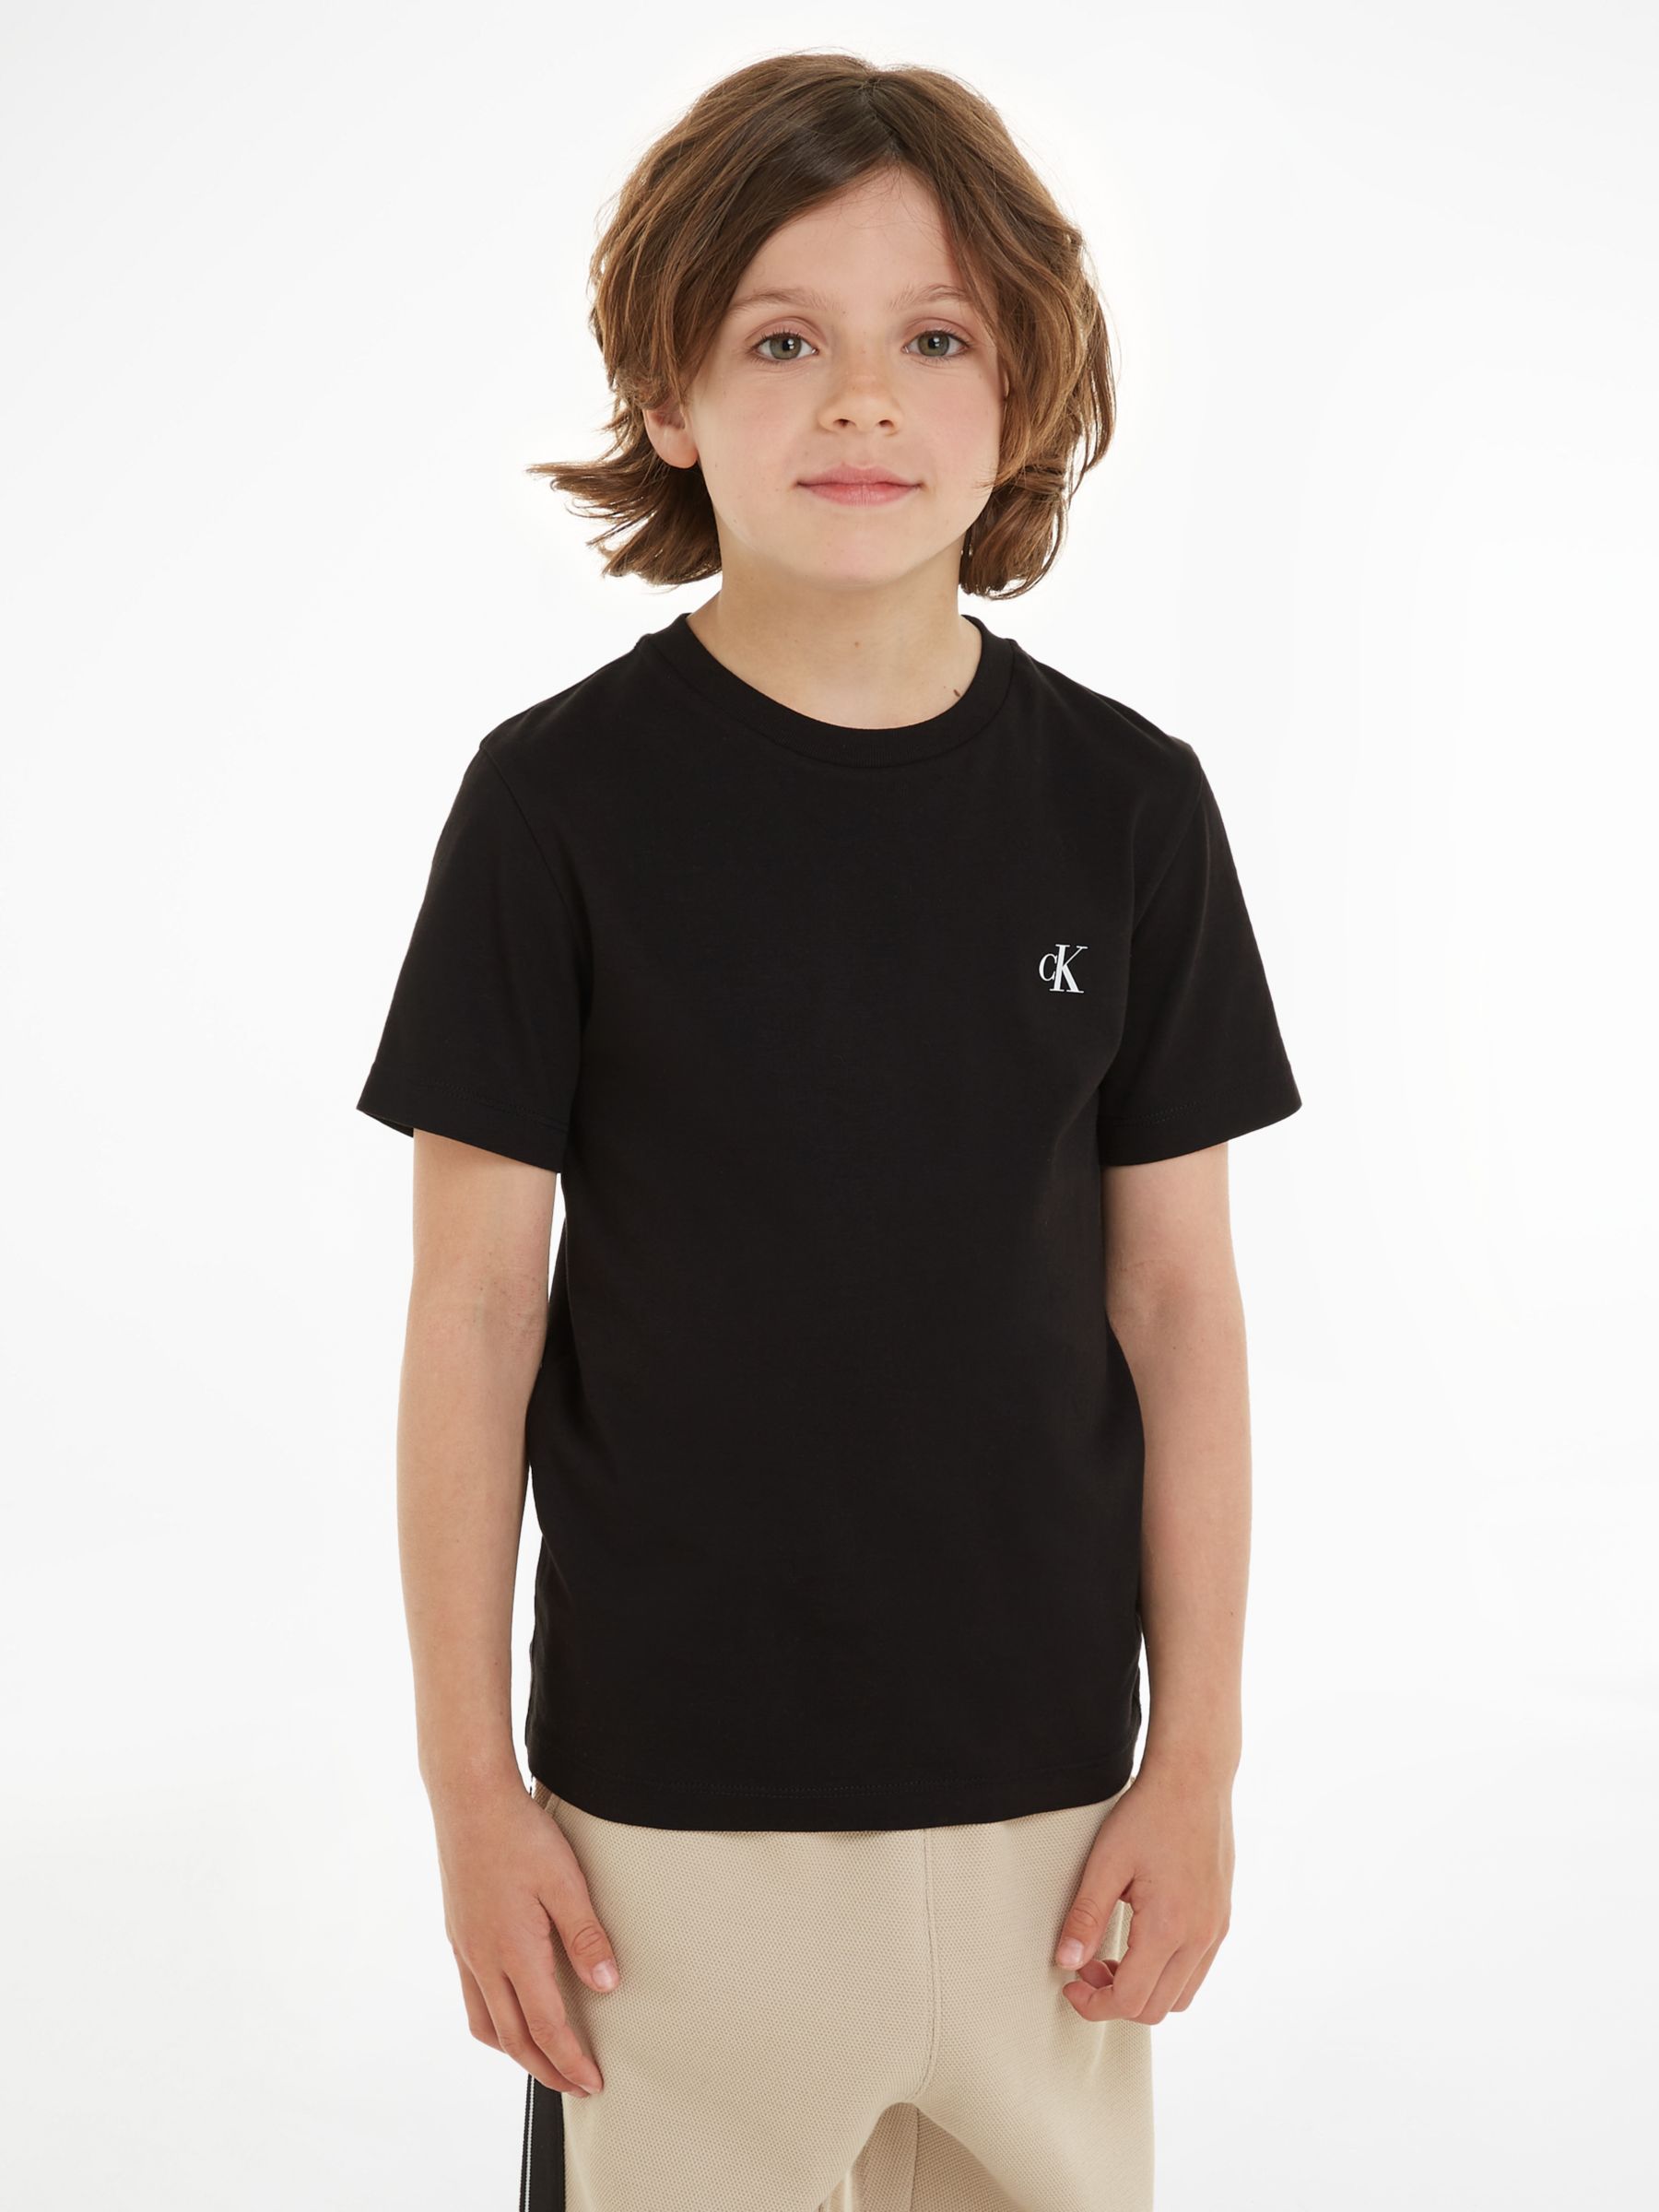 Calvin Klein Kids\' Cotton Monogram Short Sleeve T-Shirts, Pack of 2, Keepsake  Blue/Ck Black at John Lewis & Partners